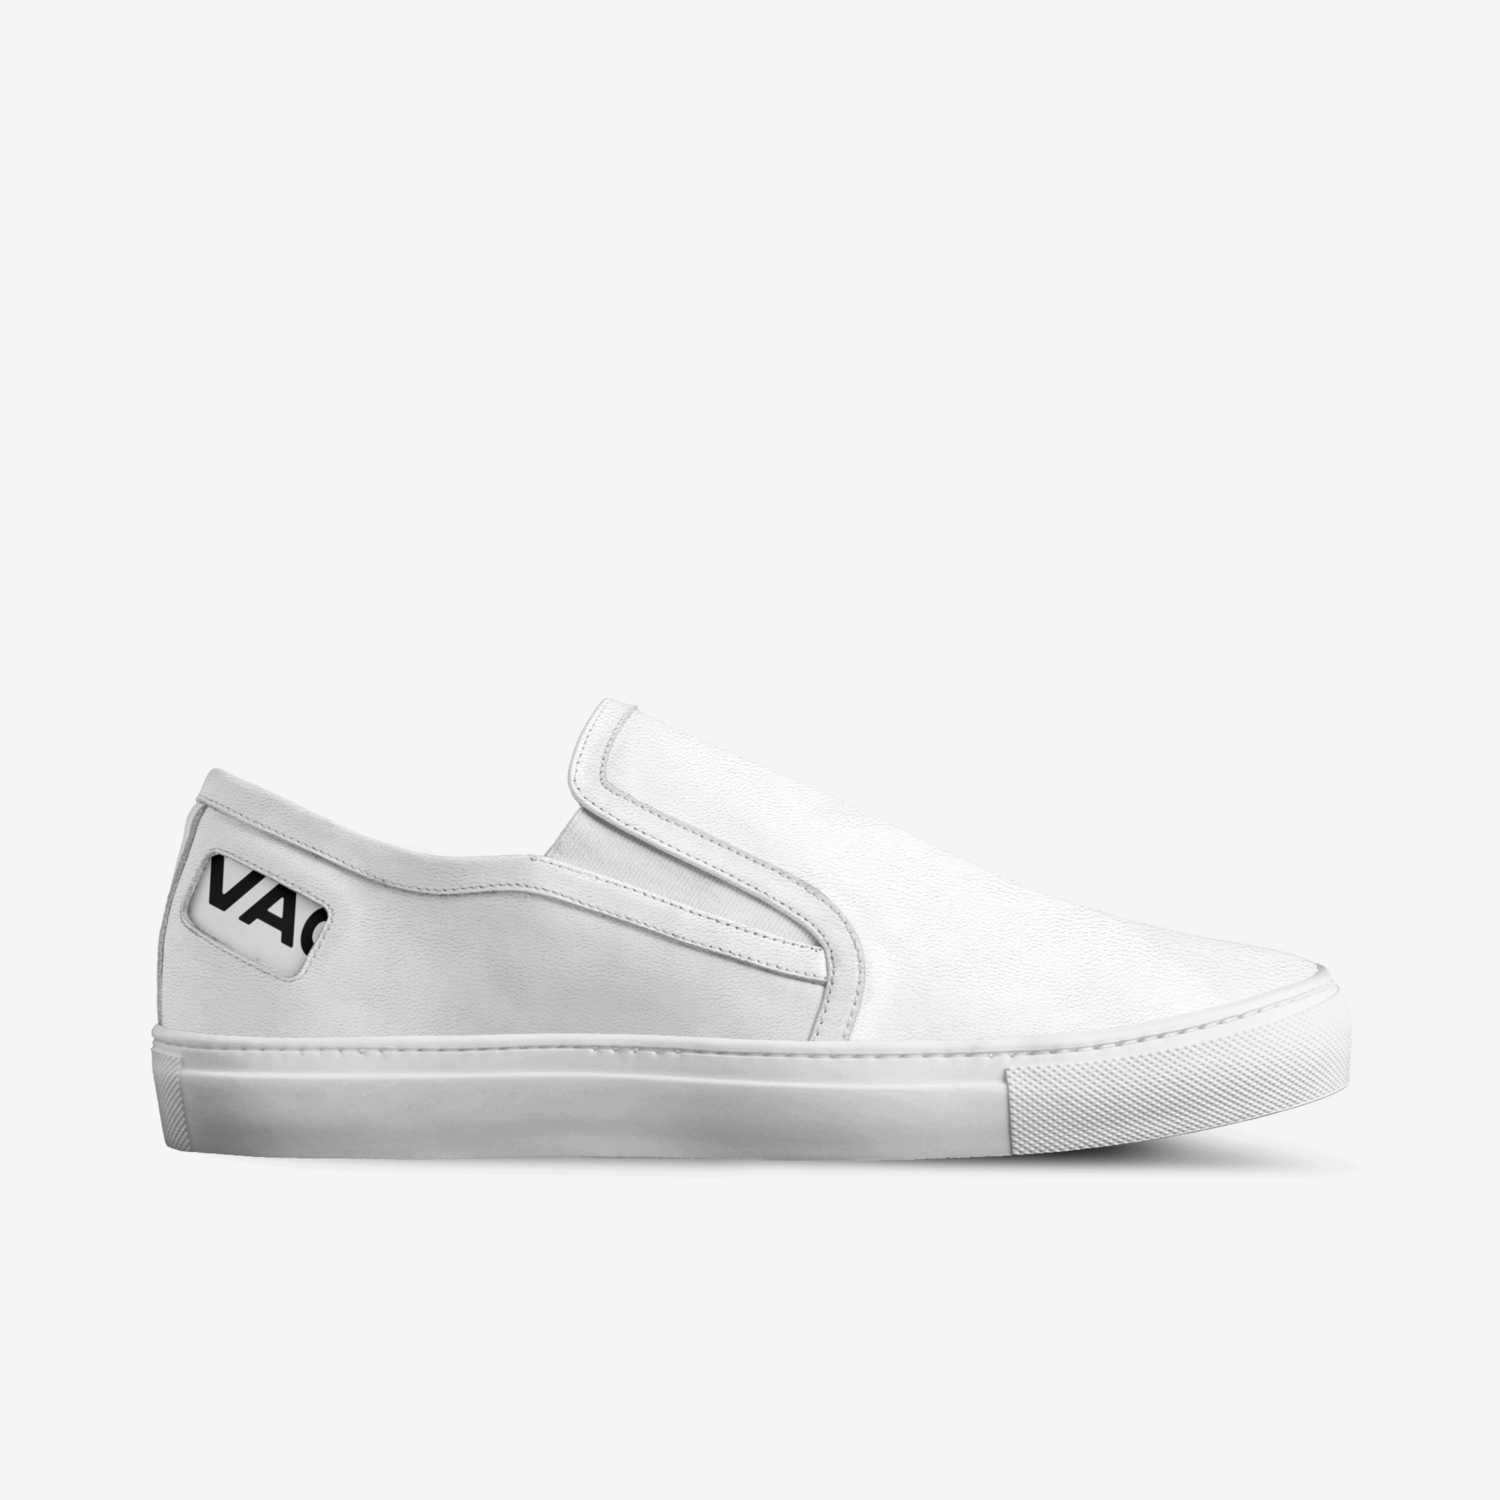 Vagabond A Shoe concept by Kasper